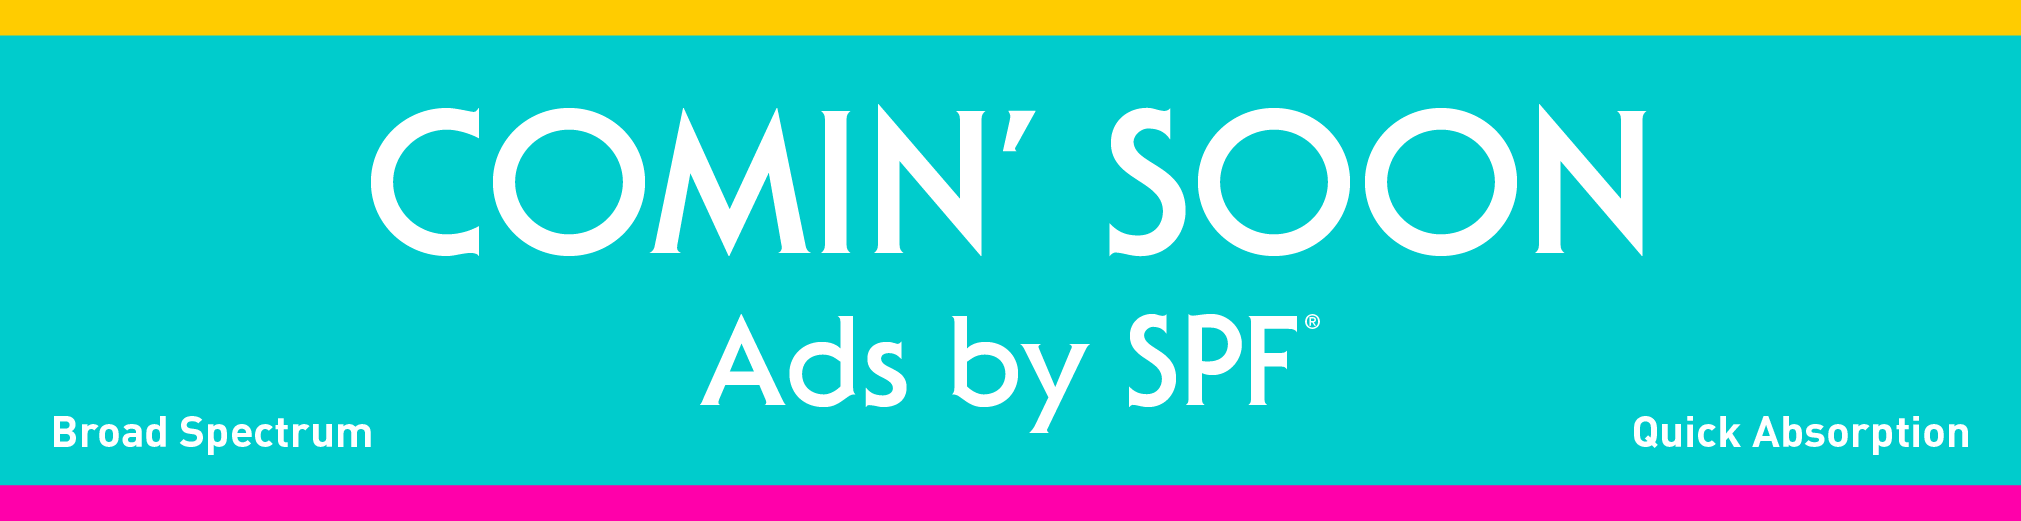 Ads by SPF